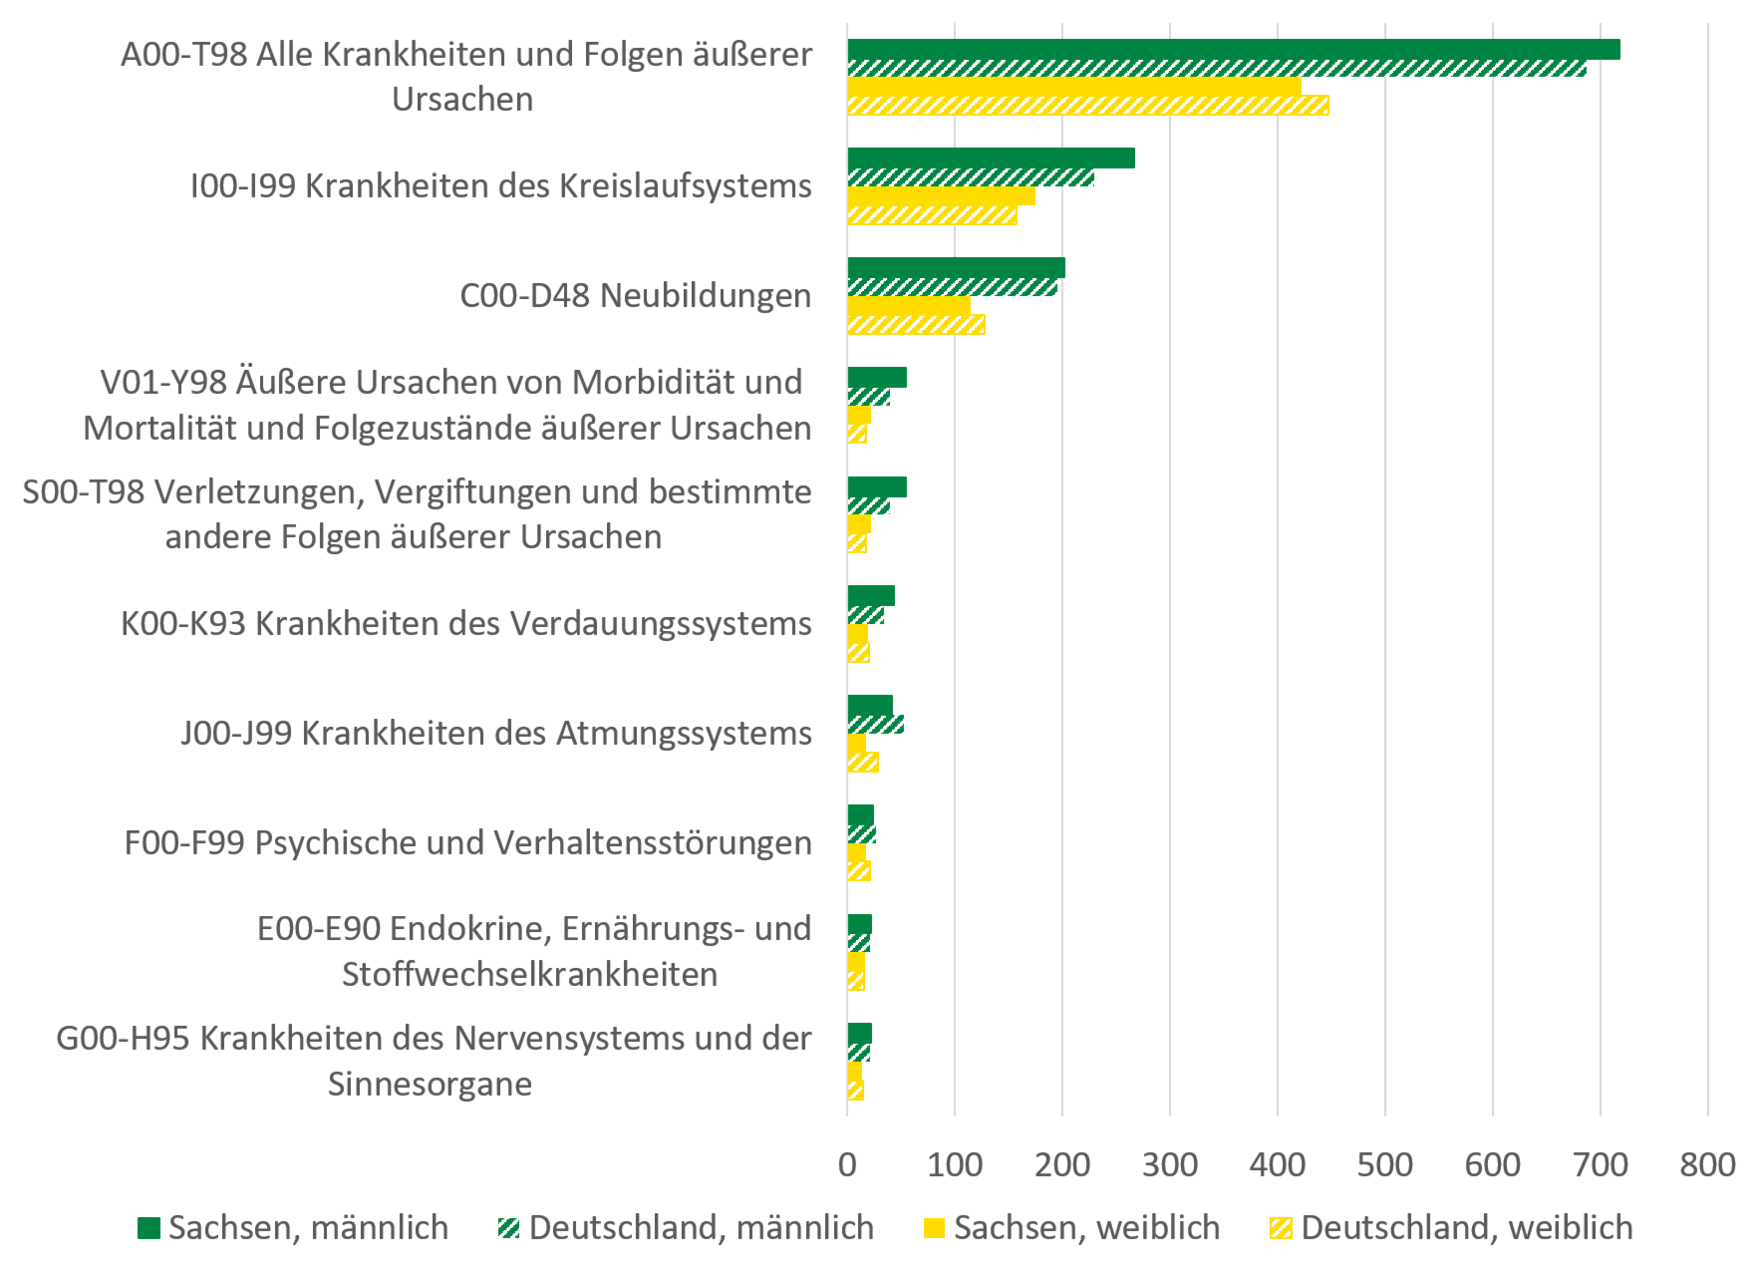 Die Grafik zeigt die beschriebenen geschlechtsspezifischen Todesursachen für Deutschland und Sachsen.